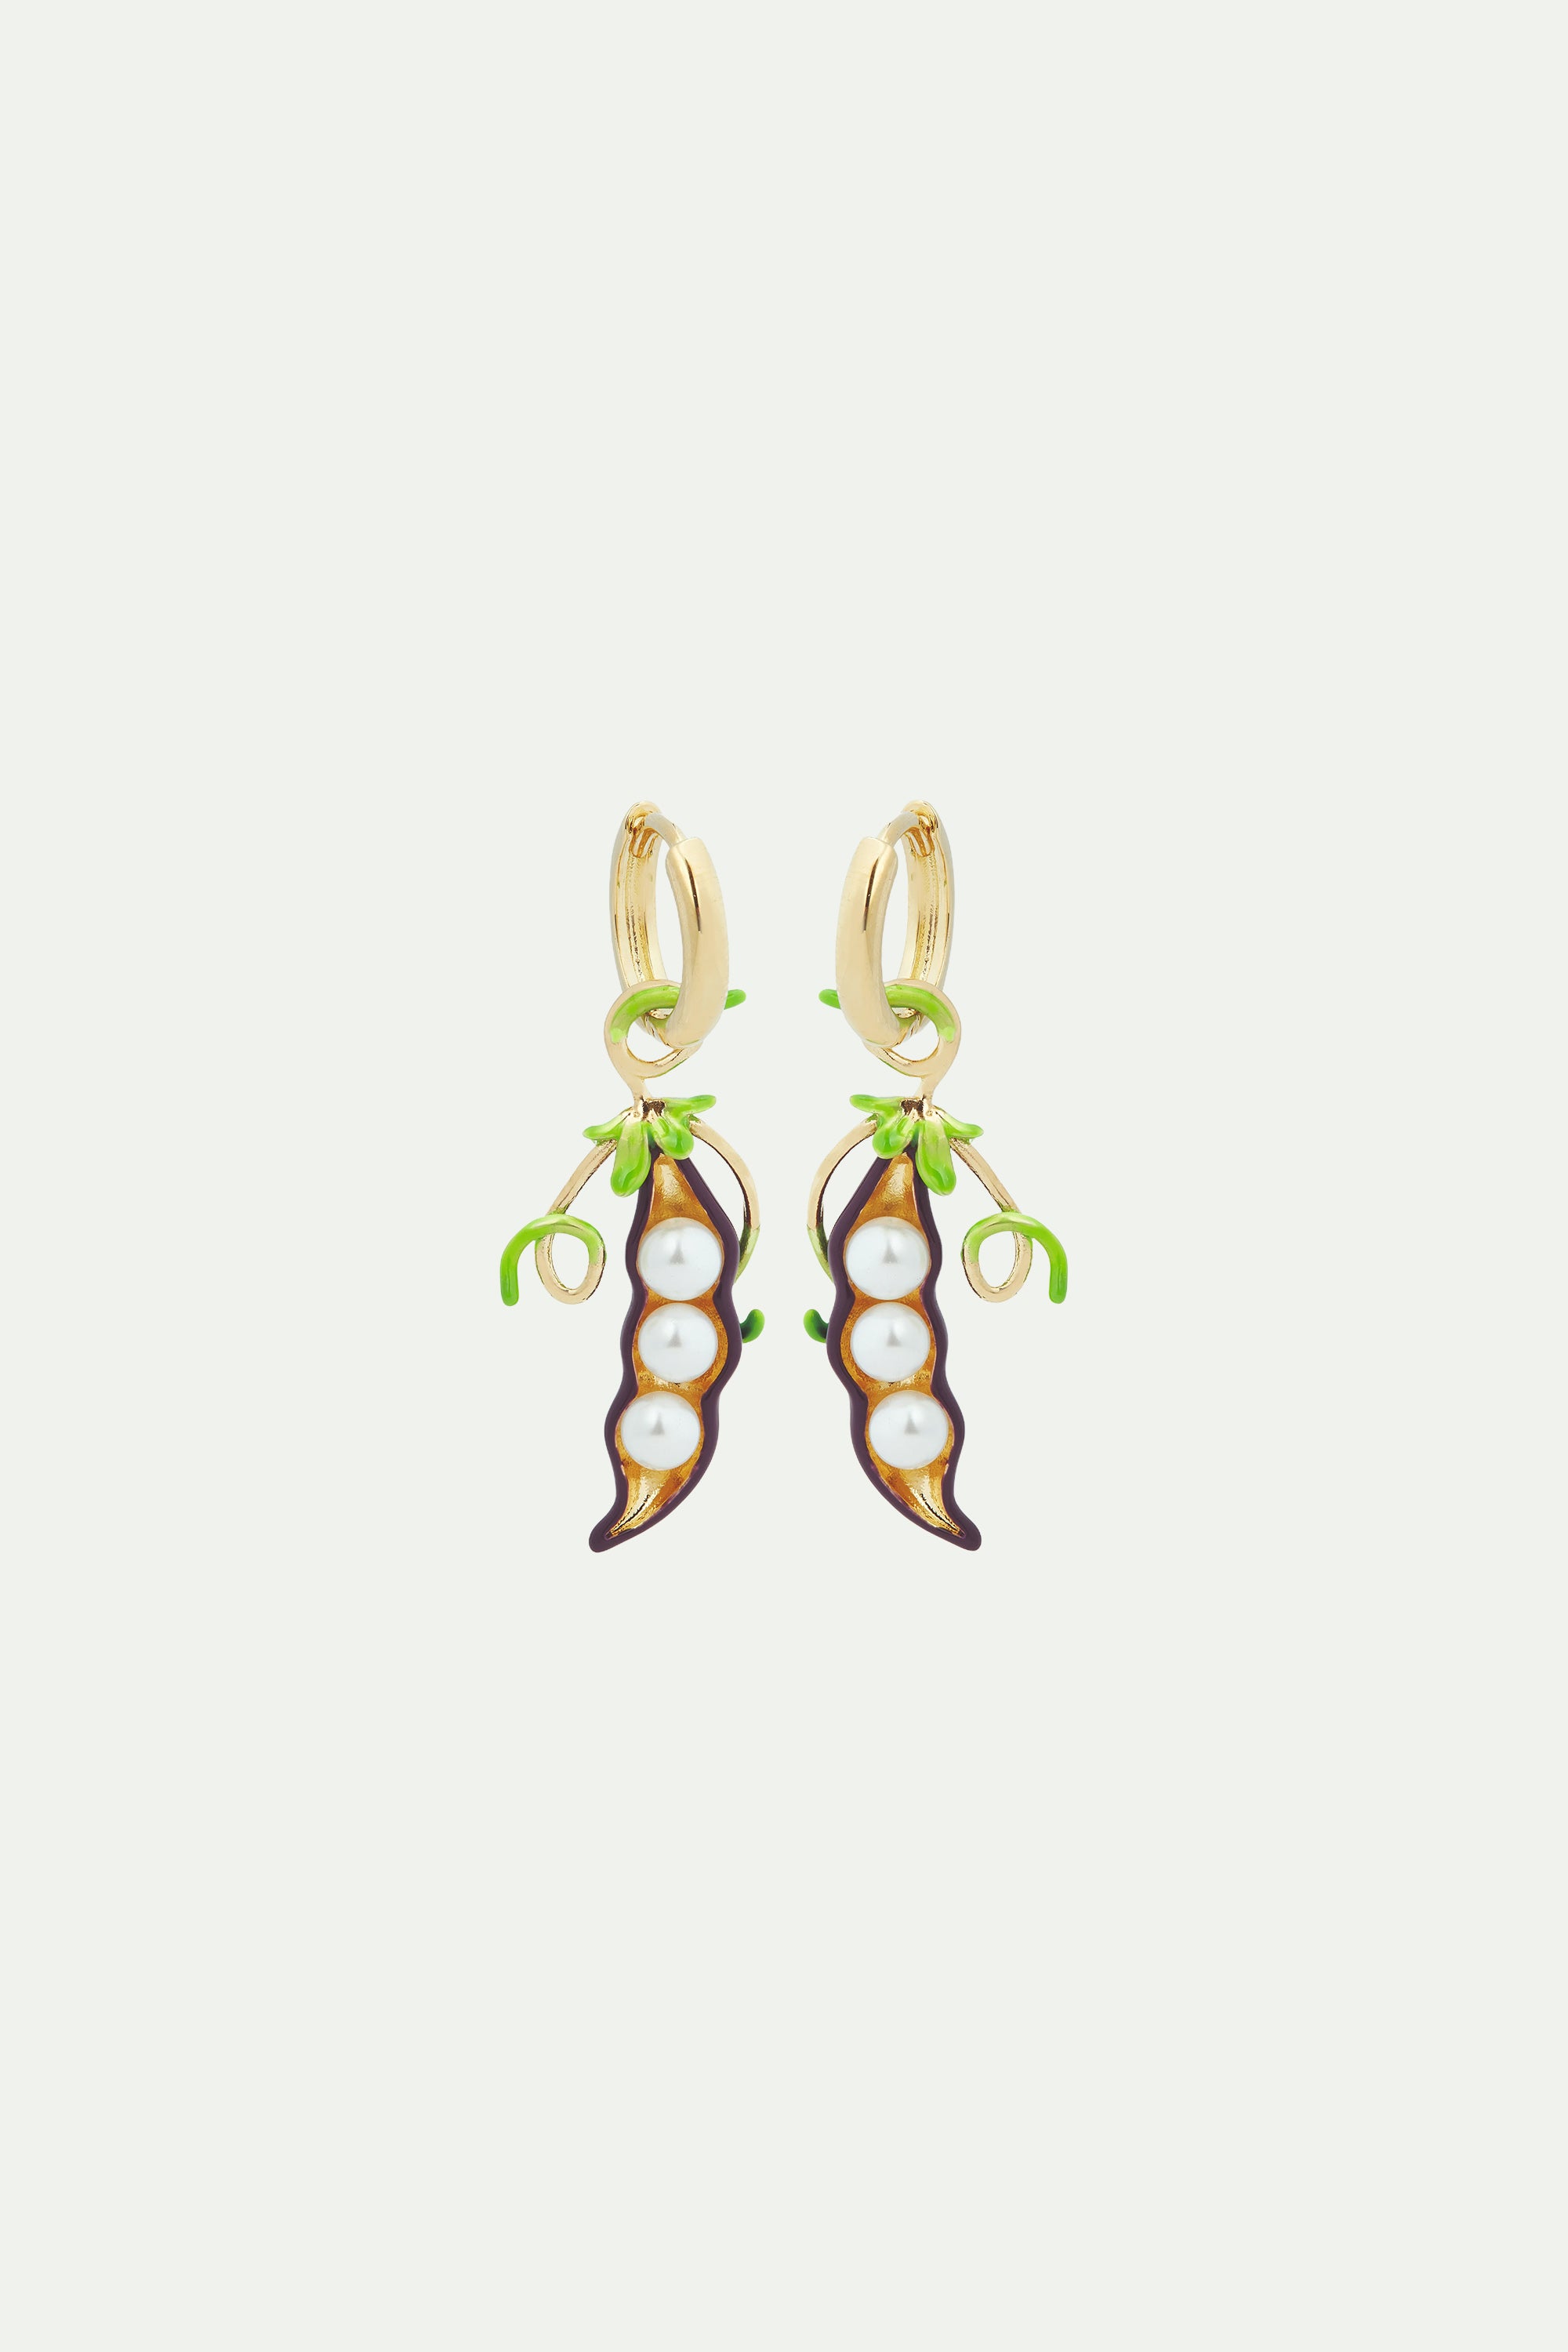 Peas and mother-of-pearl post hoop earrings